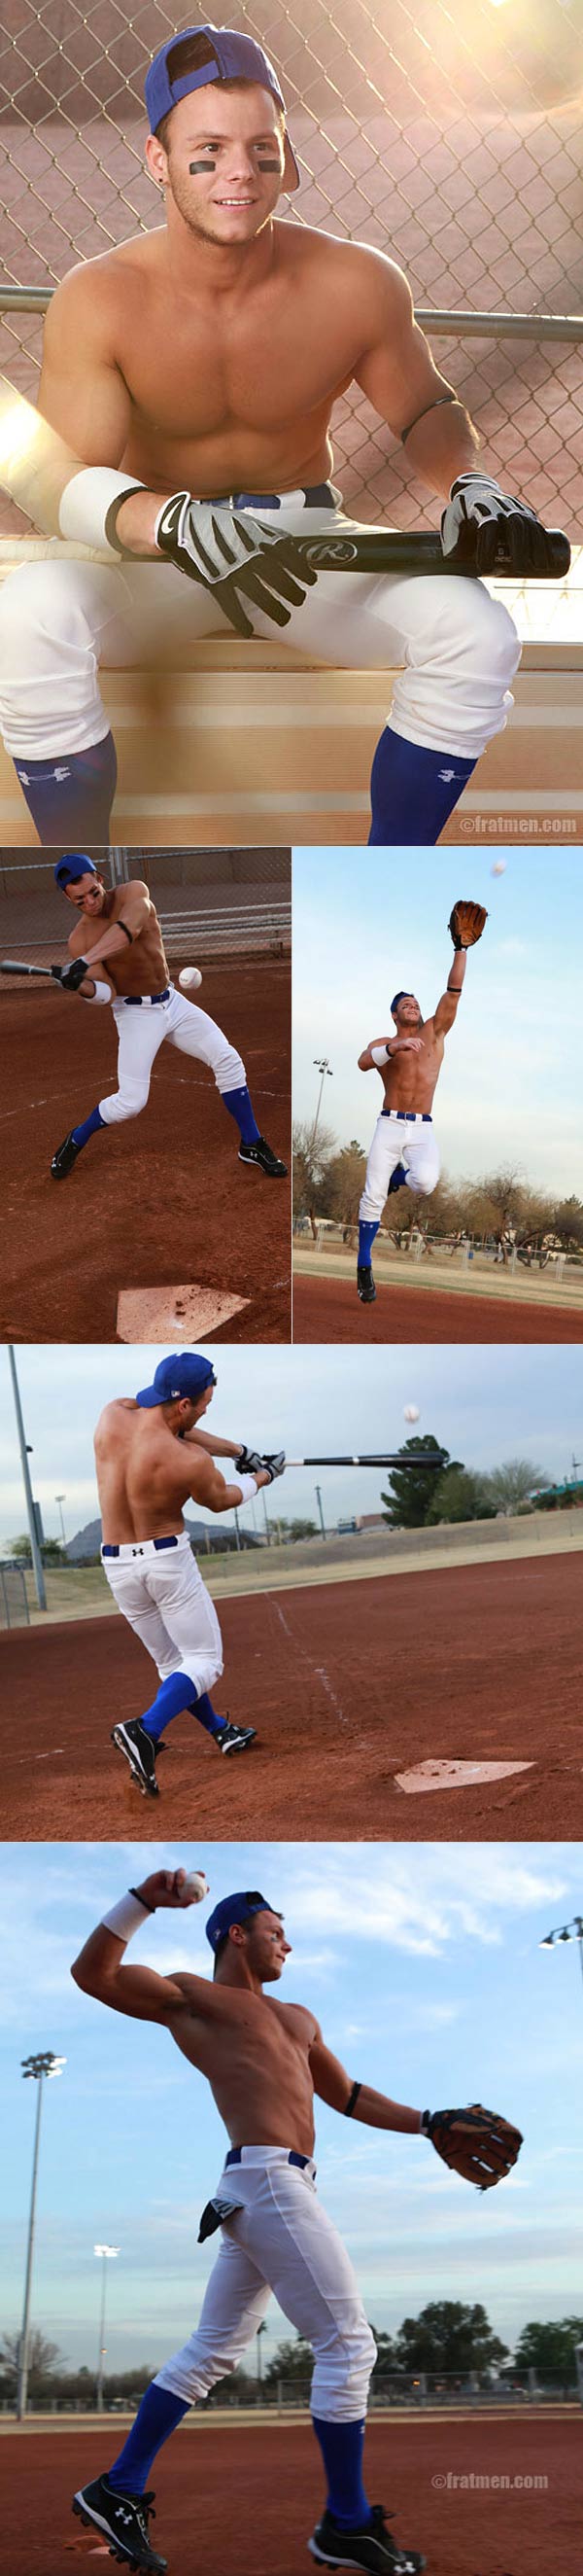 Kip (Hot Naked Baseball Player) at Fratmen.tv